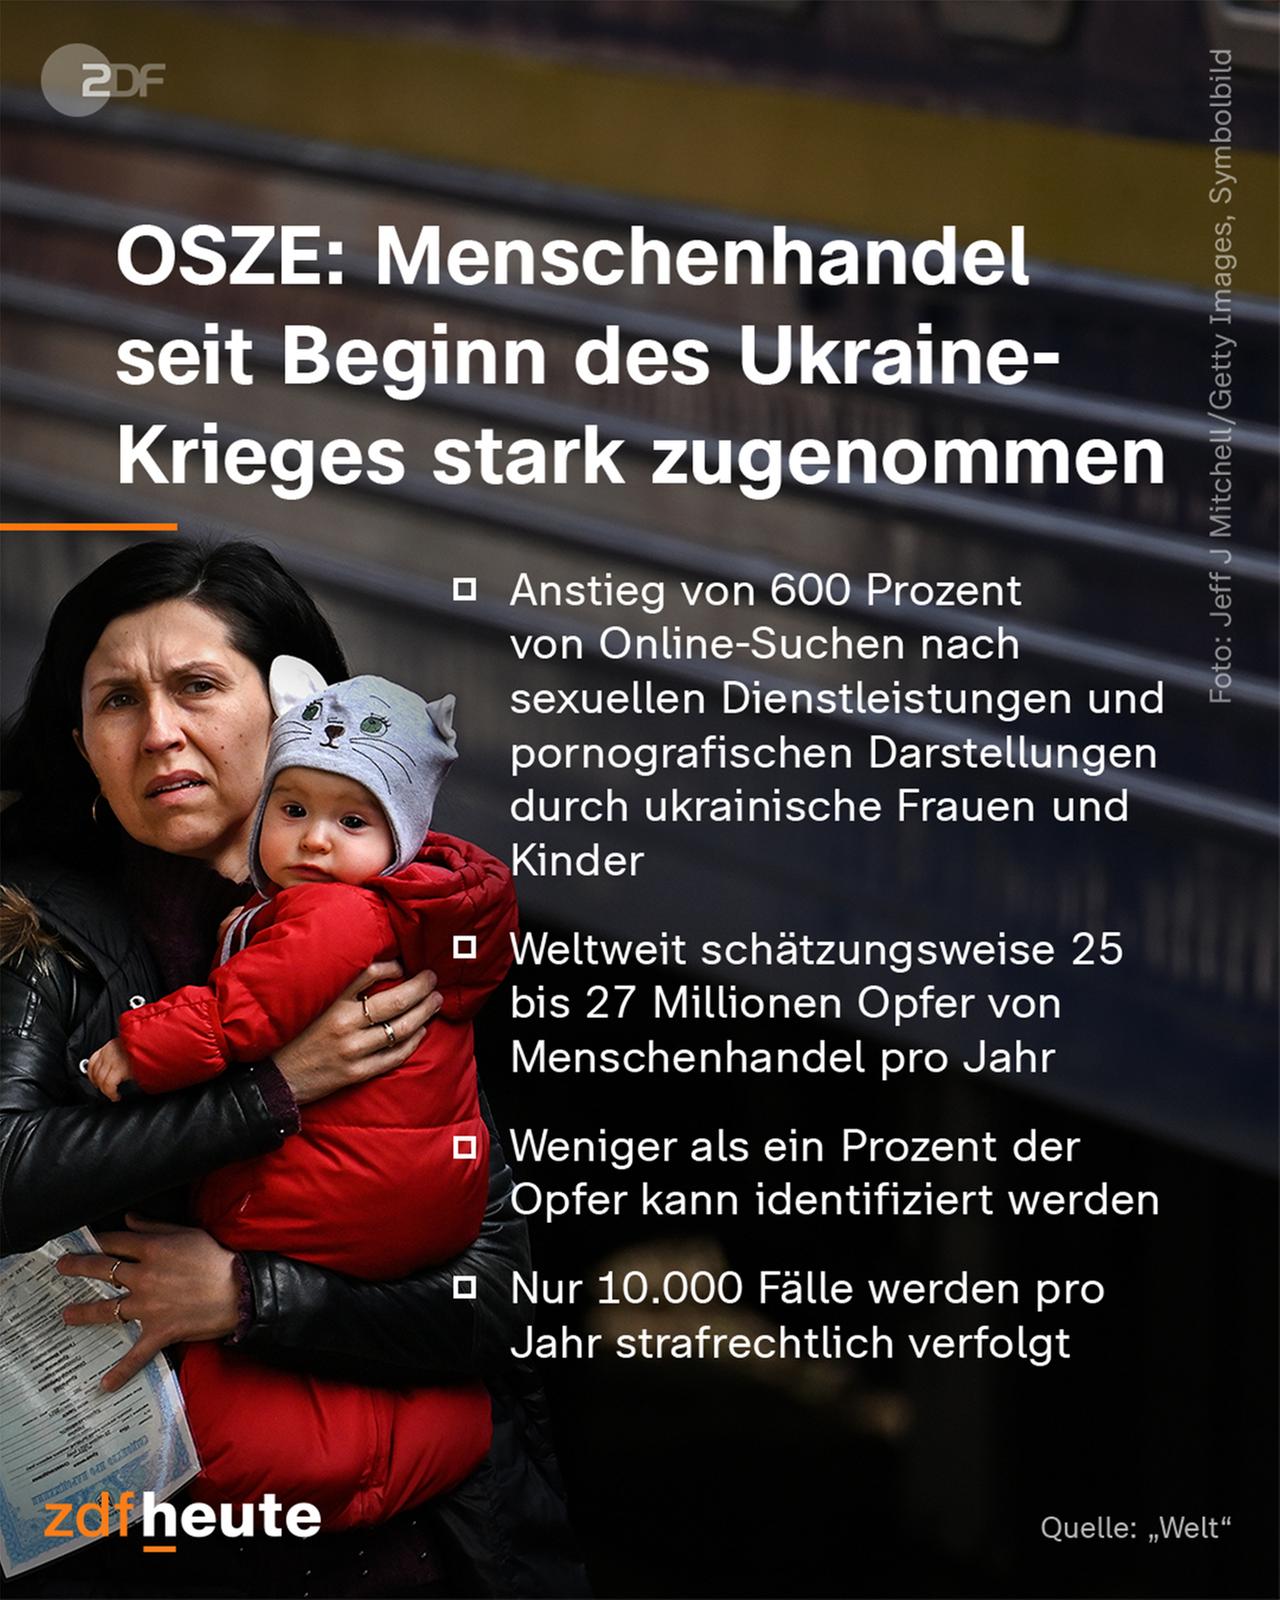 OSZE: Menschenhandel seit Beginn des Ukraine-Krieges stark zugenommen